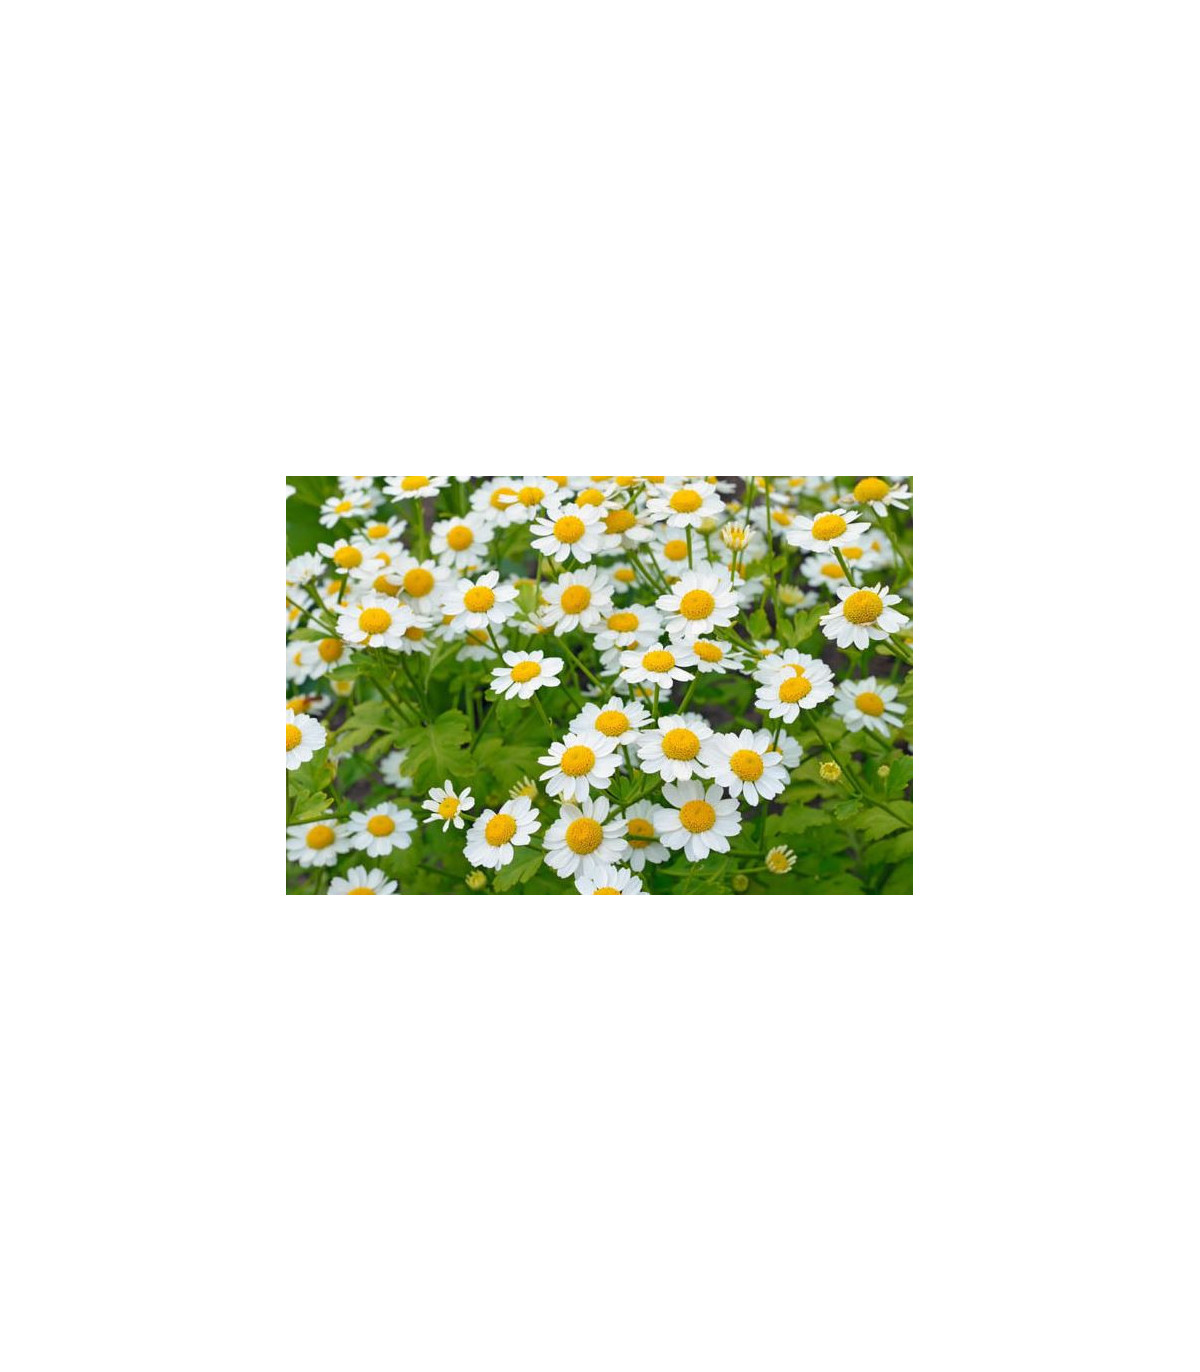 Rimbaba žltá - Chrysanthemum parthenium aureum Golden Feverfew - semiačka - 400 ks